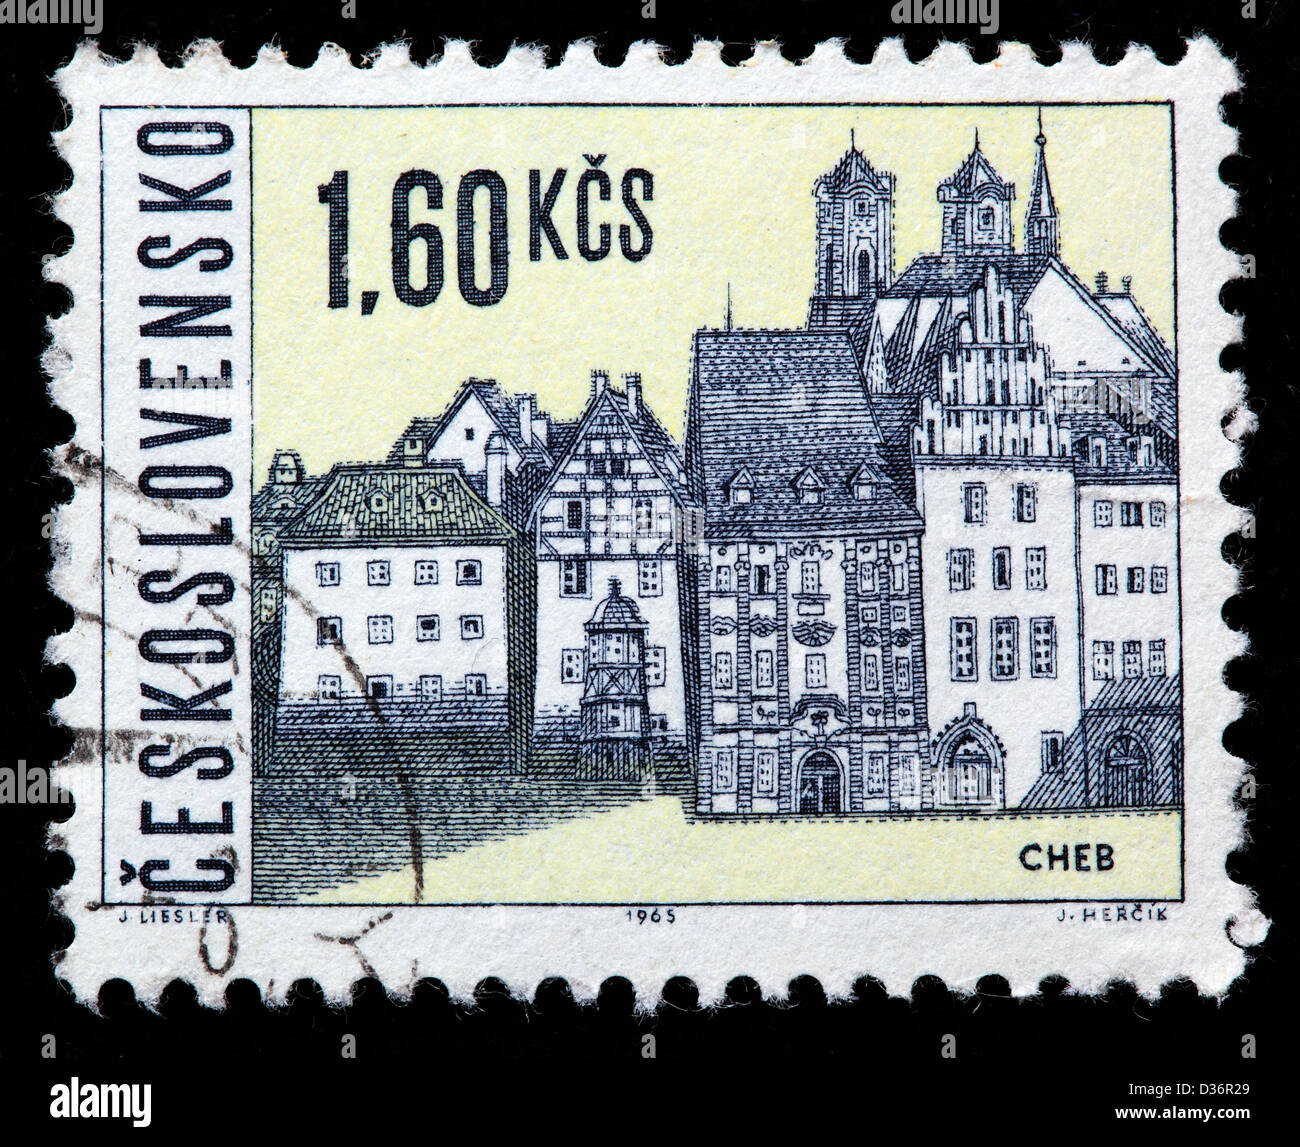 Ansicht der Stadt Cheb (Eger), Briefmarke, Tschechoslowakei, 1965 Stockfoto